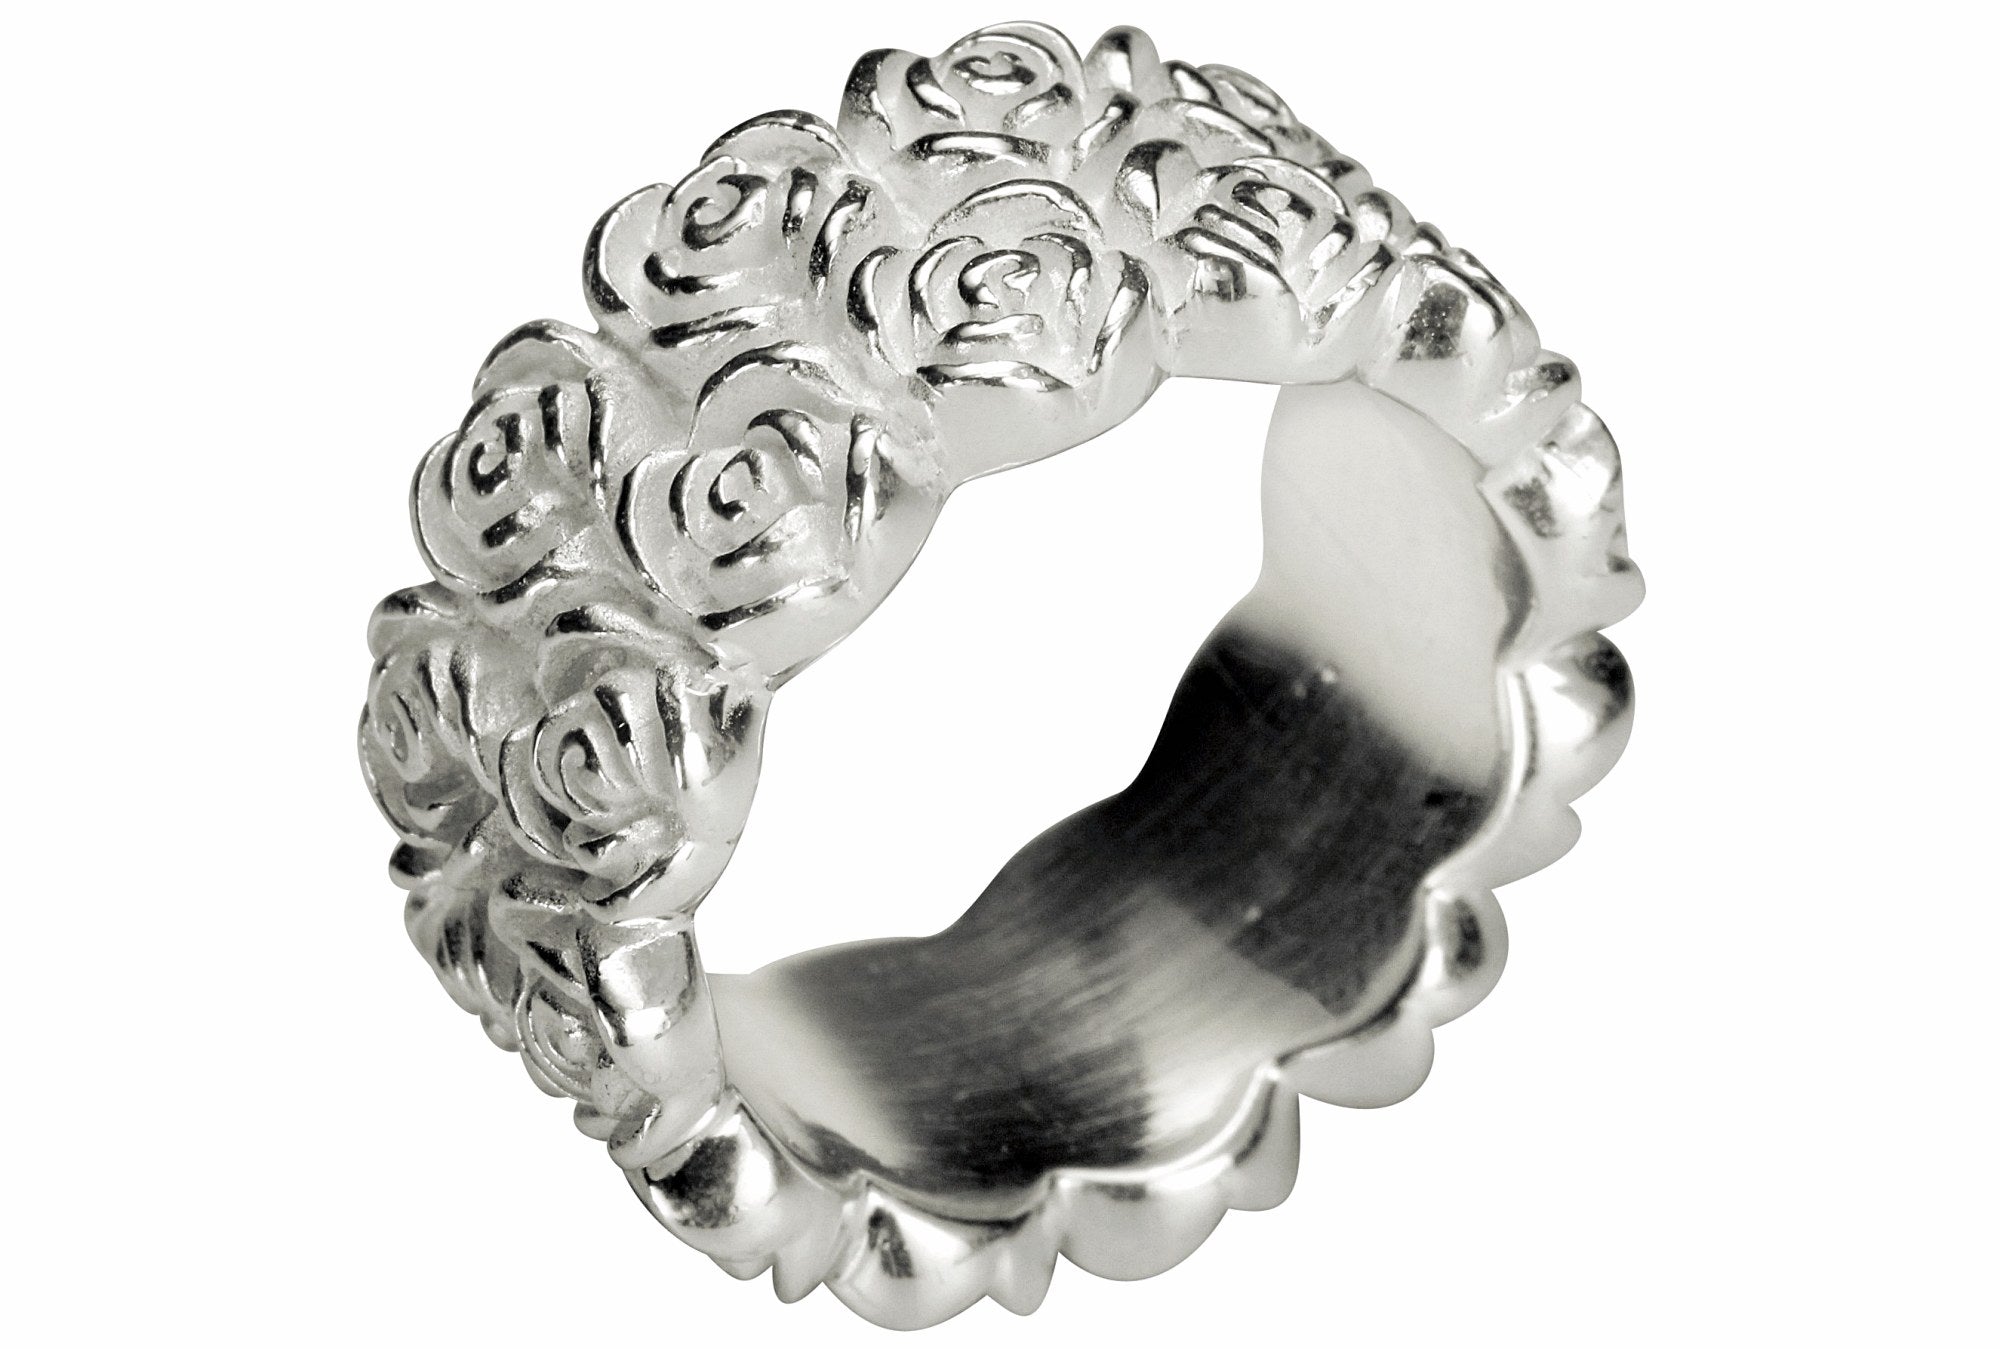 Ein massiver Rosenring aus Silber für Damen. Er ist als Bandring gearbeitet und zeigt als Motiv zwei Reihen filigraner Rosenblüten.